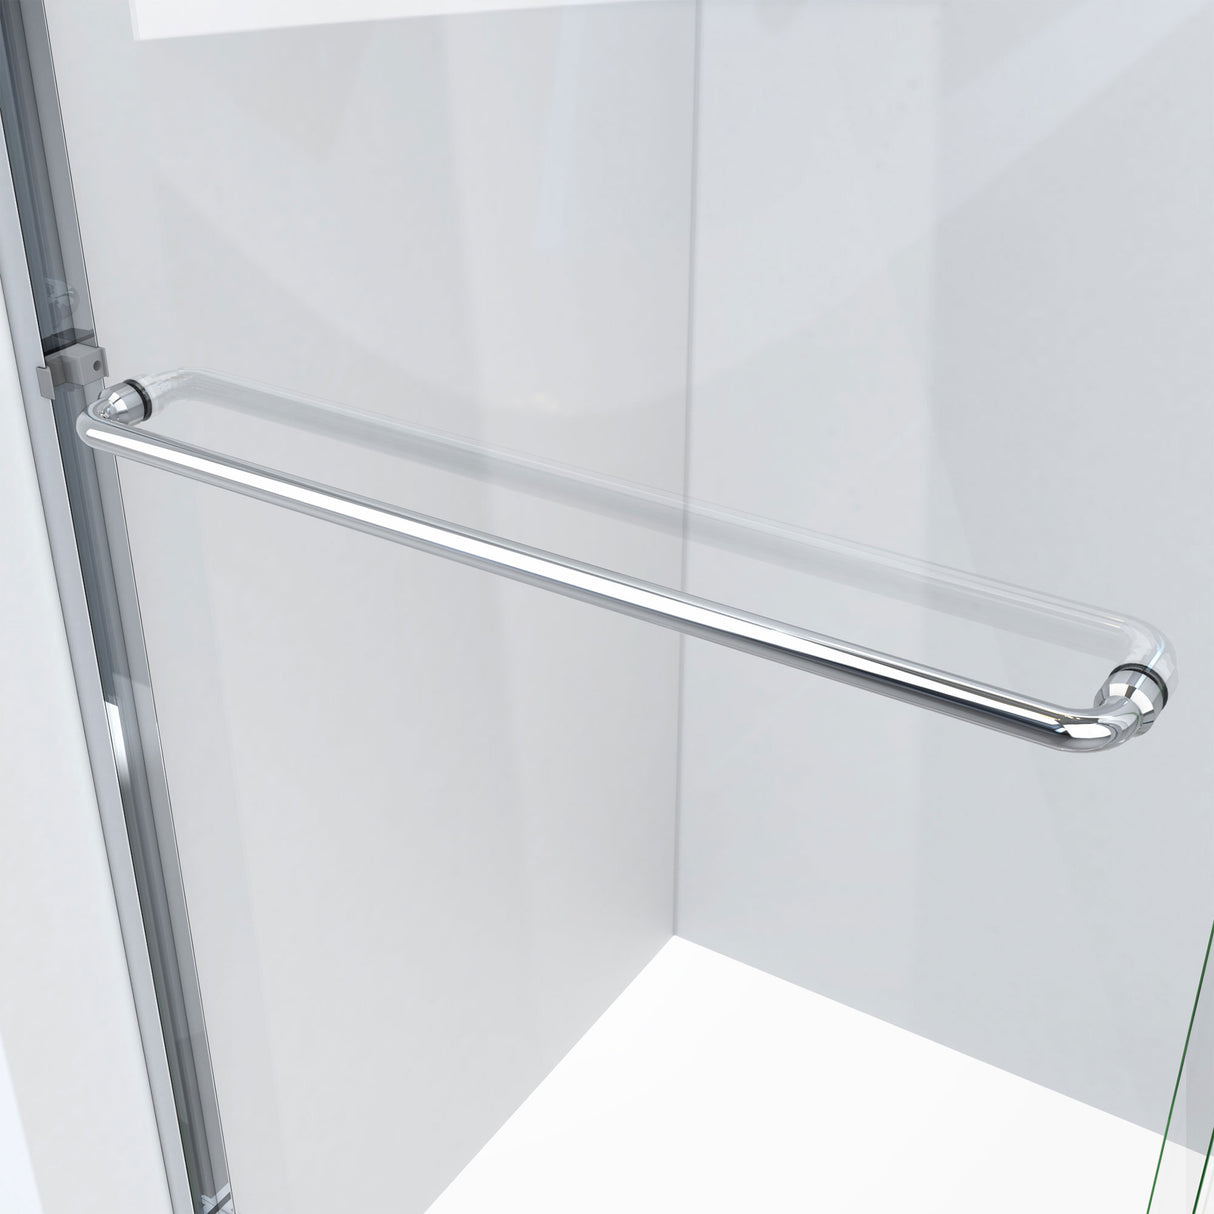 DreamLine Alliance Pro HV 56-60 in. W x 76 1/2 in. H Semi-Frameless Sliding Shower Door in Chrome and Clear Glass